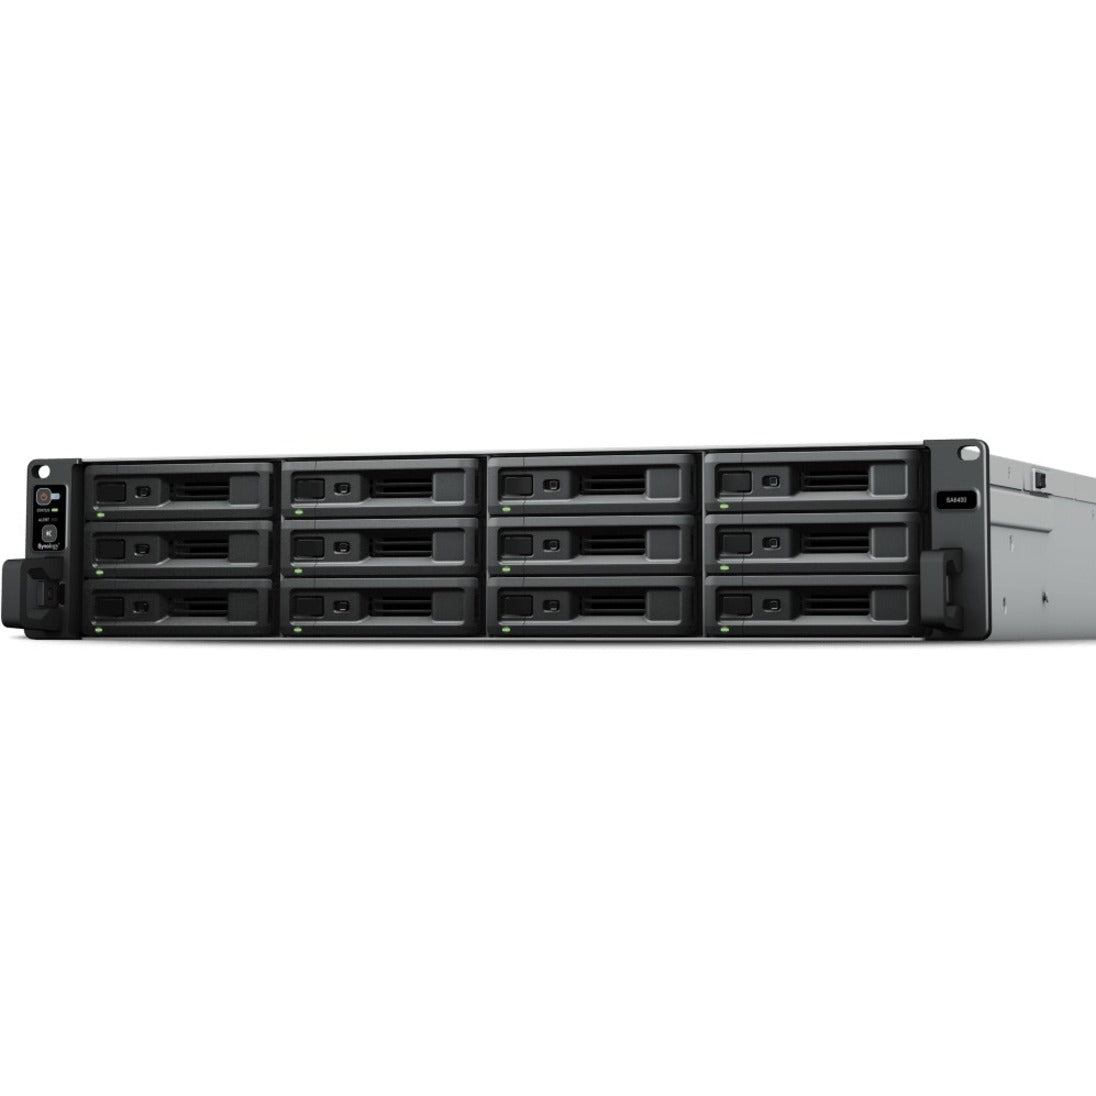 Synology SA6400 NAS Storage System, 12-Bay, 32GB DDR4, 5-Year Warranty